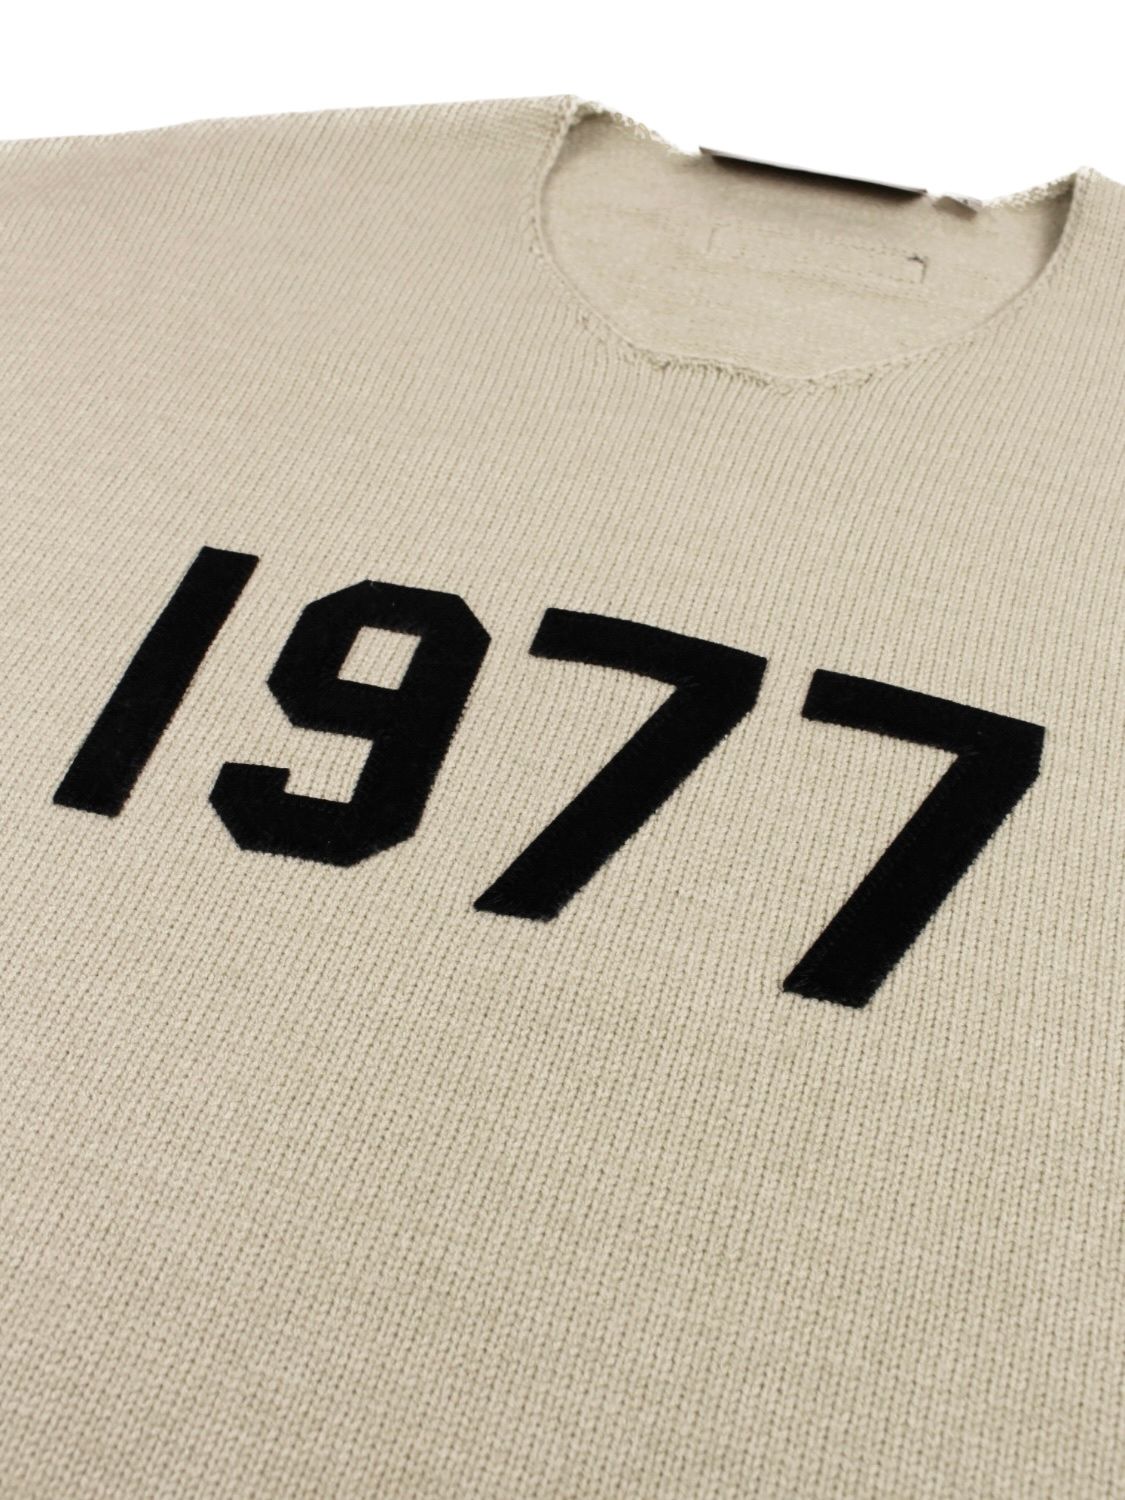 ホワイトブラウン FOG エッセンシャルズ セーター 1977 ロゴ